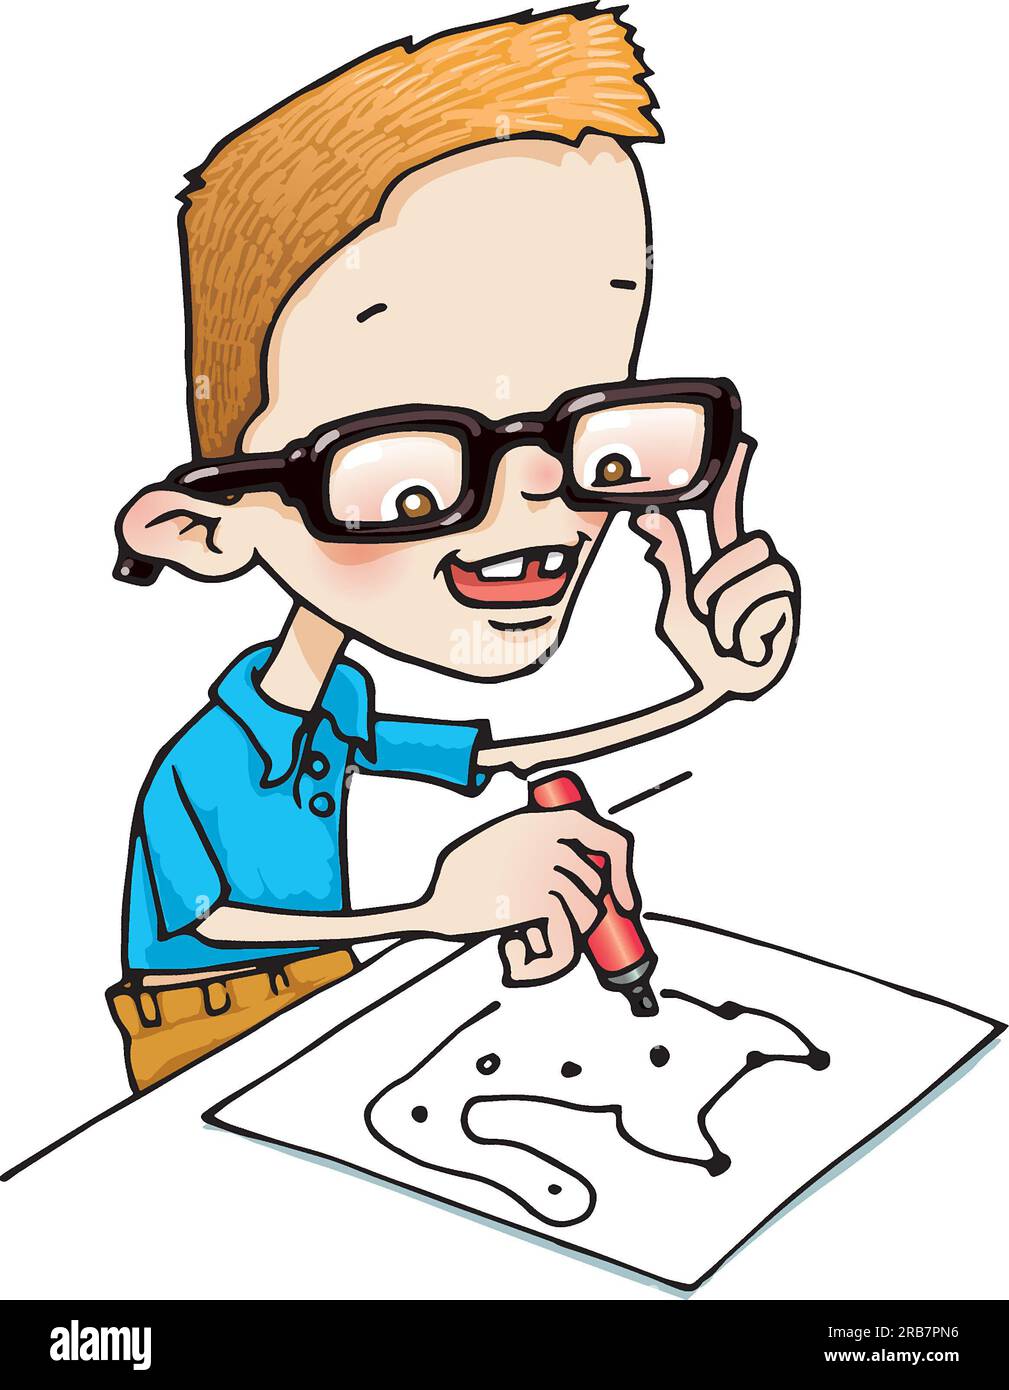 Ein Kunstjunge, der einen Stift hält, mit einem Join-the-Dots-Puzzle spielt, Gleichheitsillustrierung, Kinderentwicklung, Schreib- und Zeichenlernen, Entwicklungsstadien Stockfoto